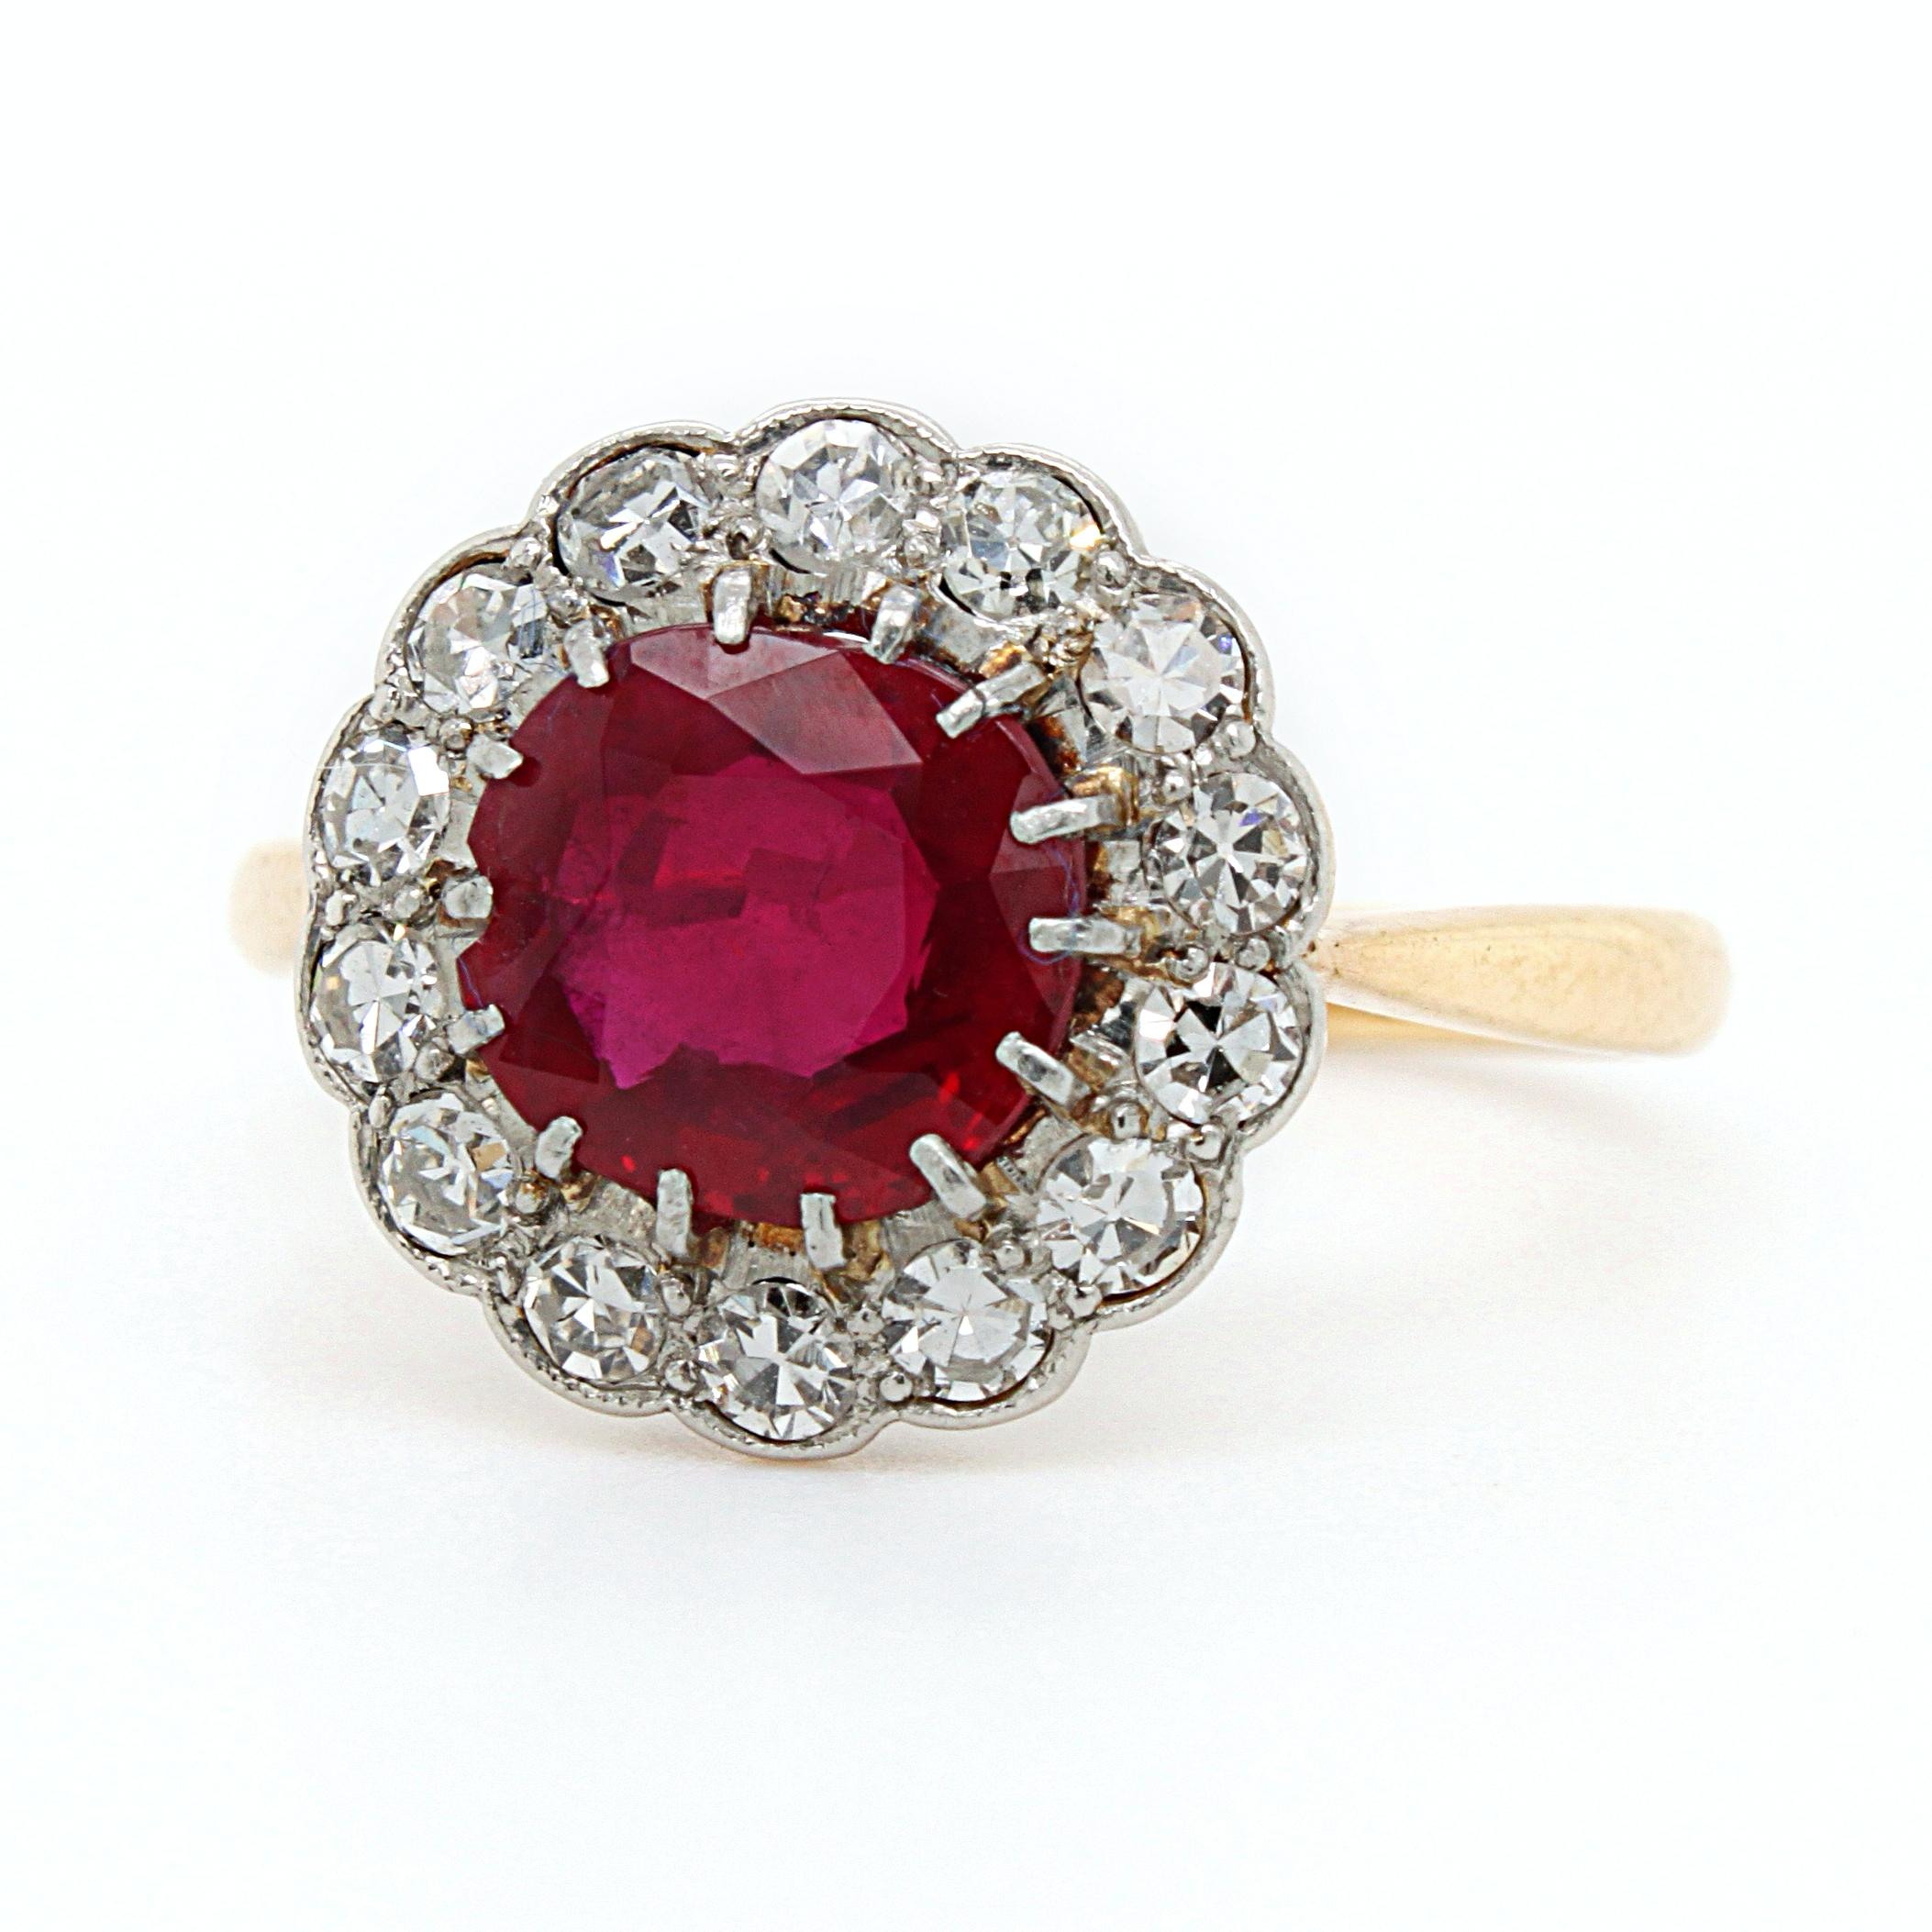 Ein Ring mit einem natürlichen burmesischen Rubin und einem Diamanten im Einzelschliff, ca. 1900. 

Der Rubin im Kissenschliff ist von außergewöhnlicher Qualität. Er hat eine taubenblutrote Farbe und einen schönen Kristall. Er wiegt ca. 1,9 Karat,